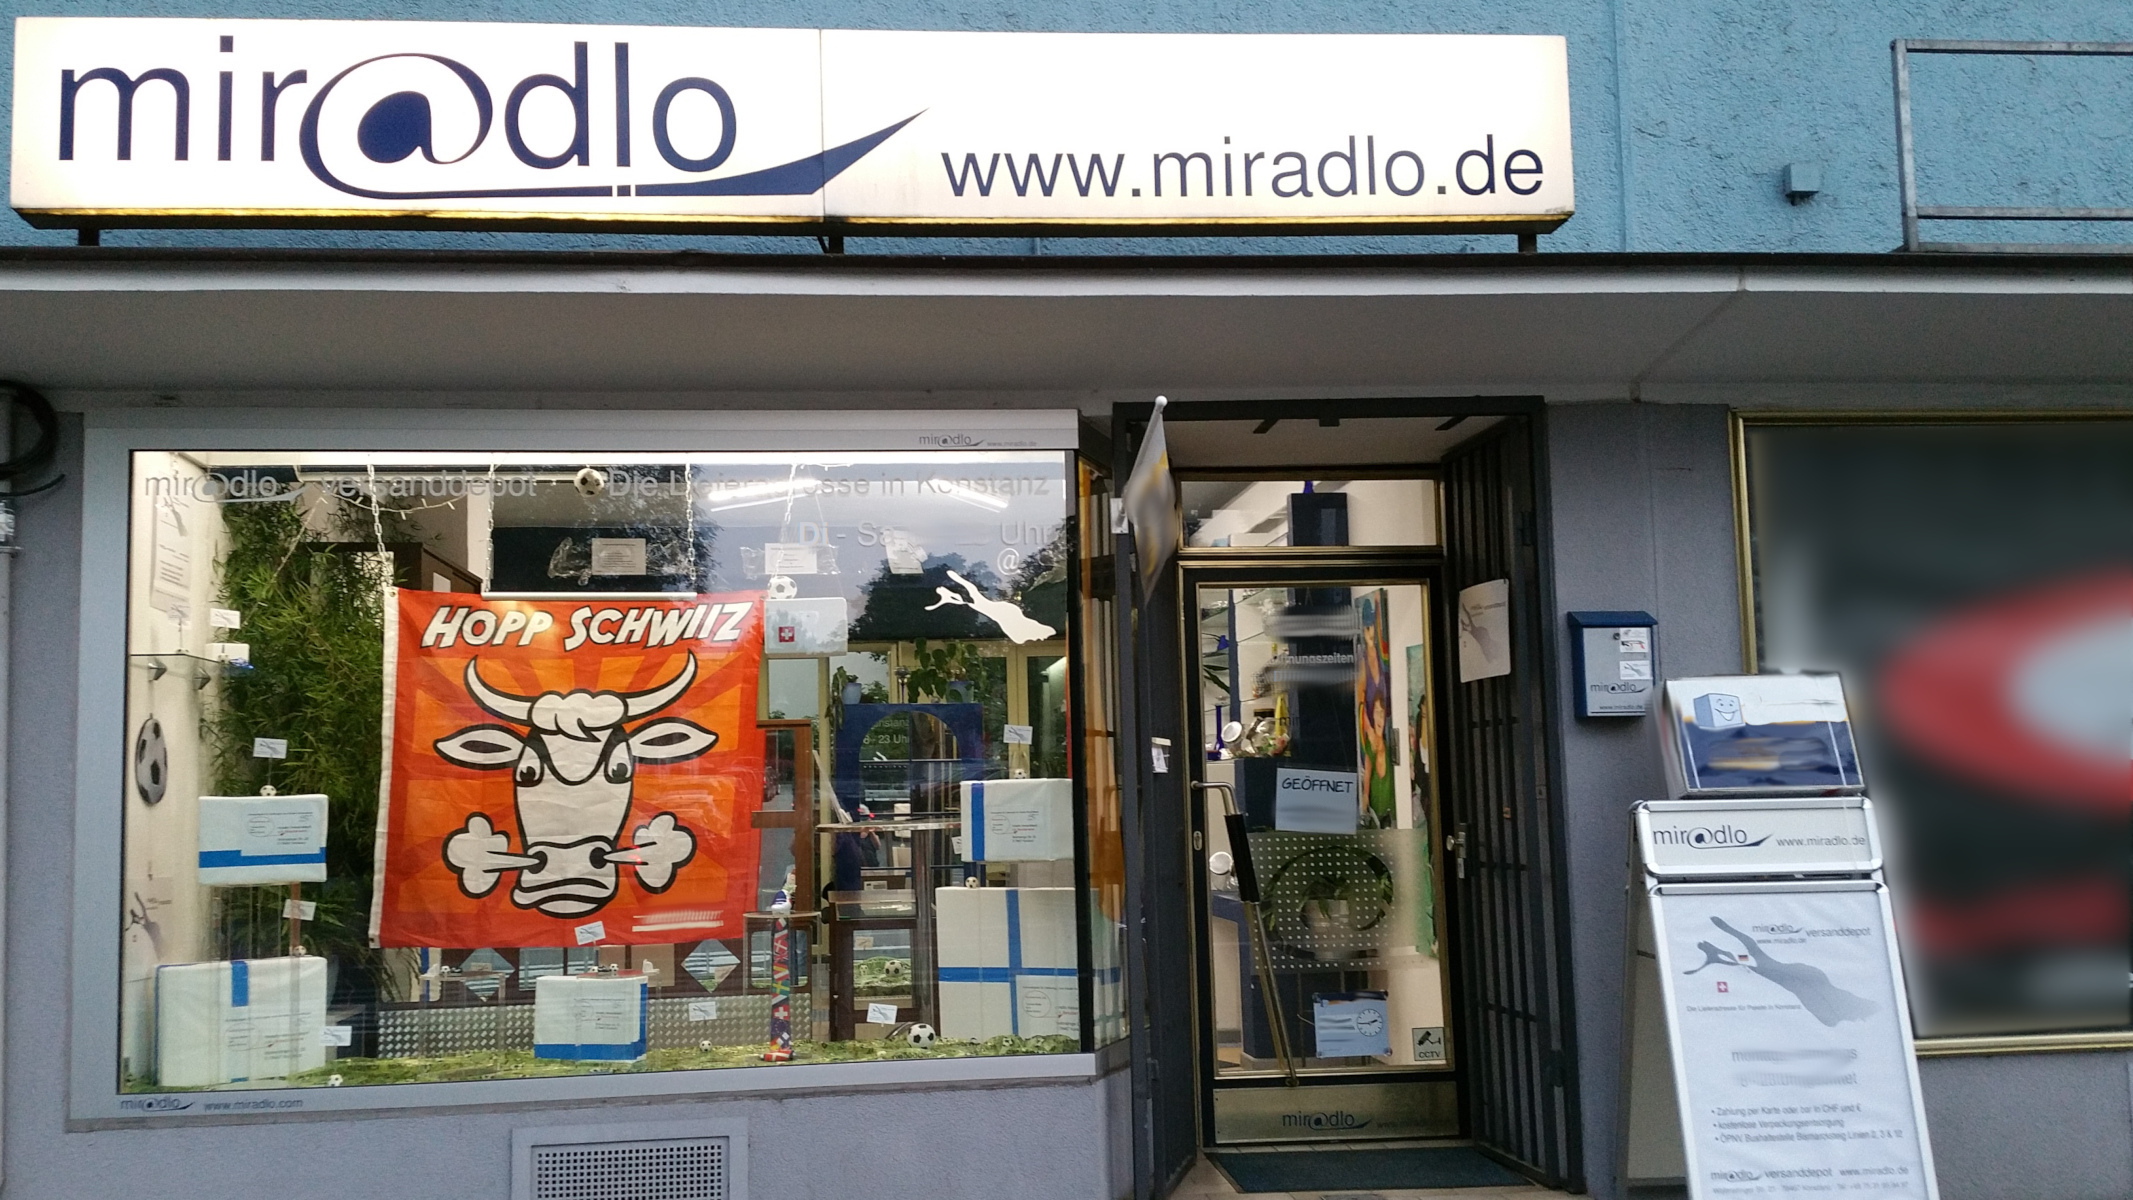 miradlo-Versanddepot Konstanz, Schaufenster mit Fußballdeko und Hopp-Schwiiz-Fahne